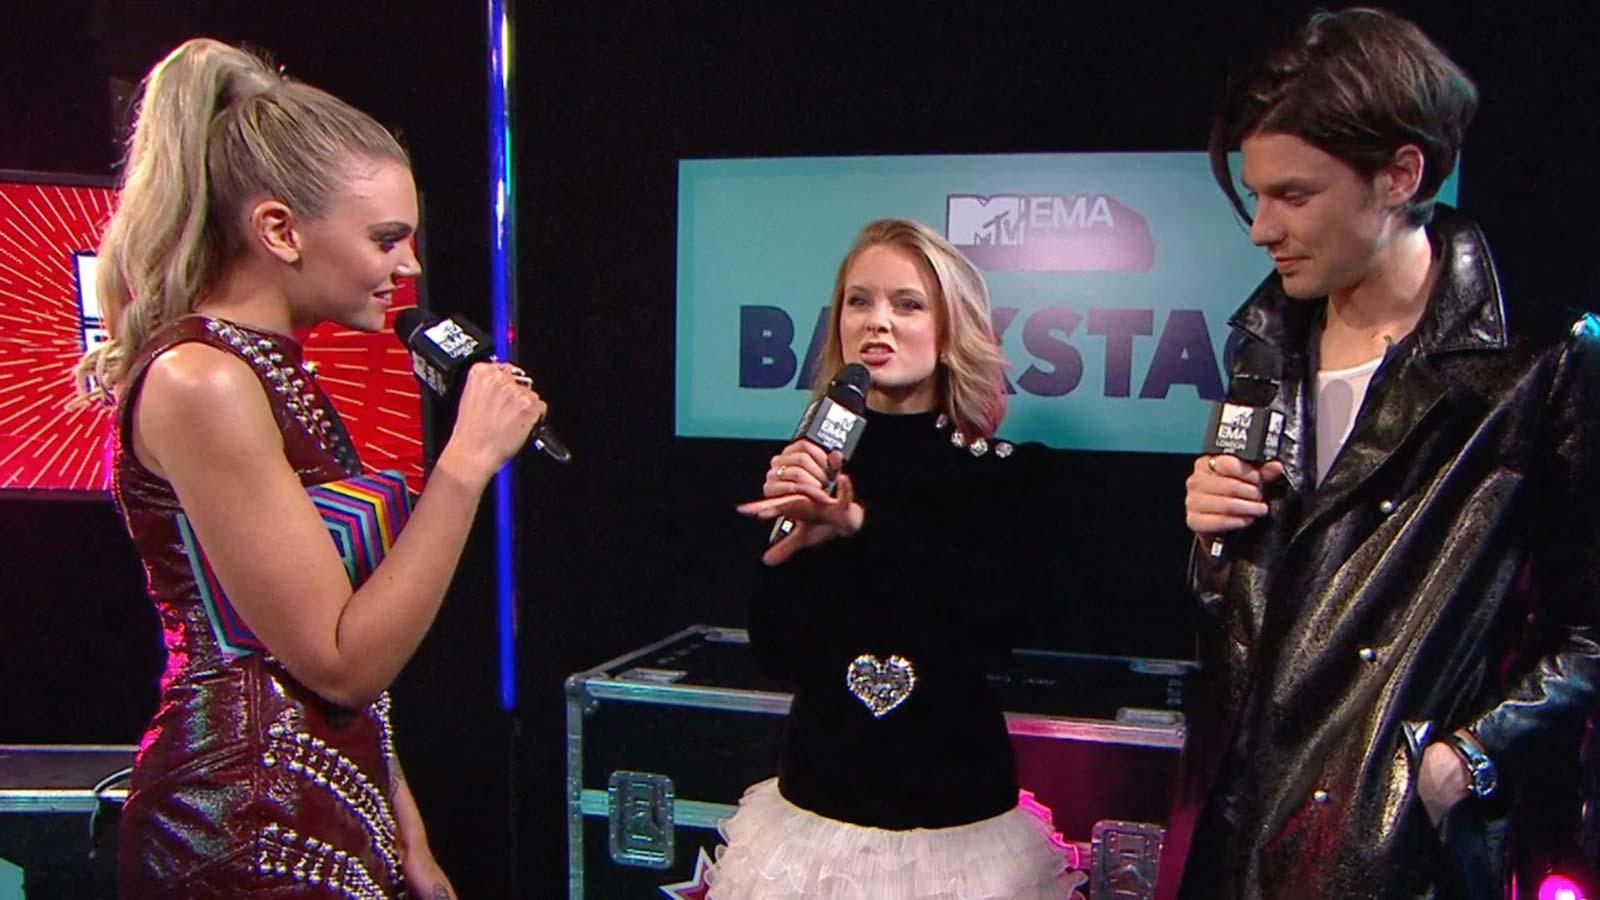 Zara pratar om sitt framträdande och kommande skivan backstage på MTV-galan i London.